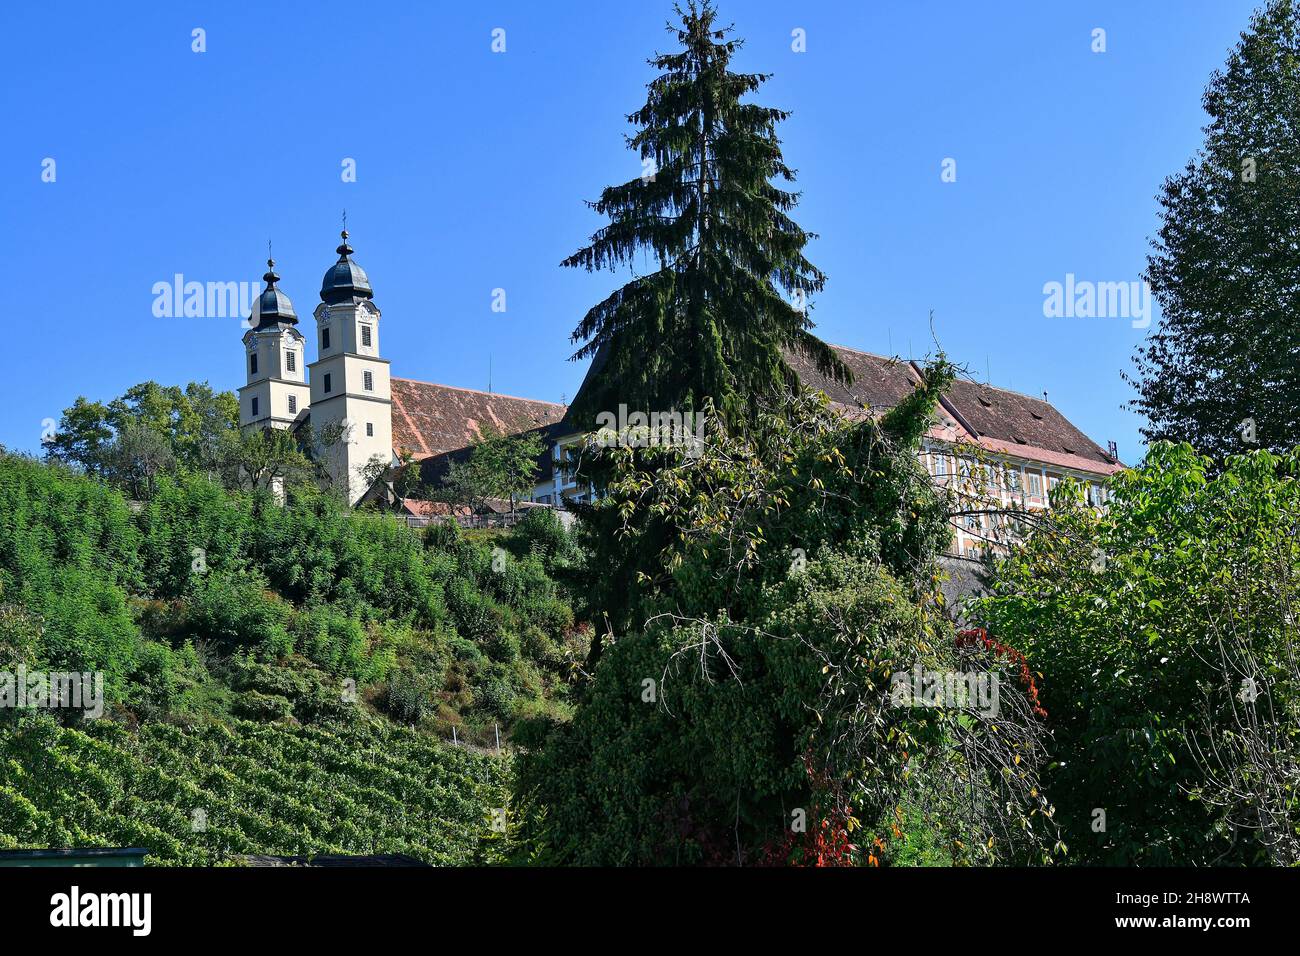 Stainz, Österreich - 23. September 2021: Das Schloss Stainz, ein ehemaliges Augustinerkloster mit Barockkirche, beherbergt heute ein Jagdmuseum und ein Agricu Stockfoto